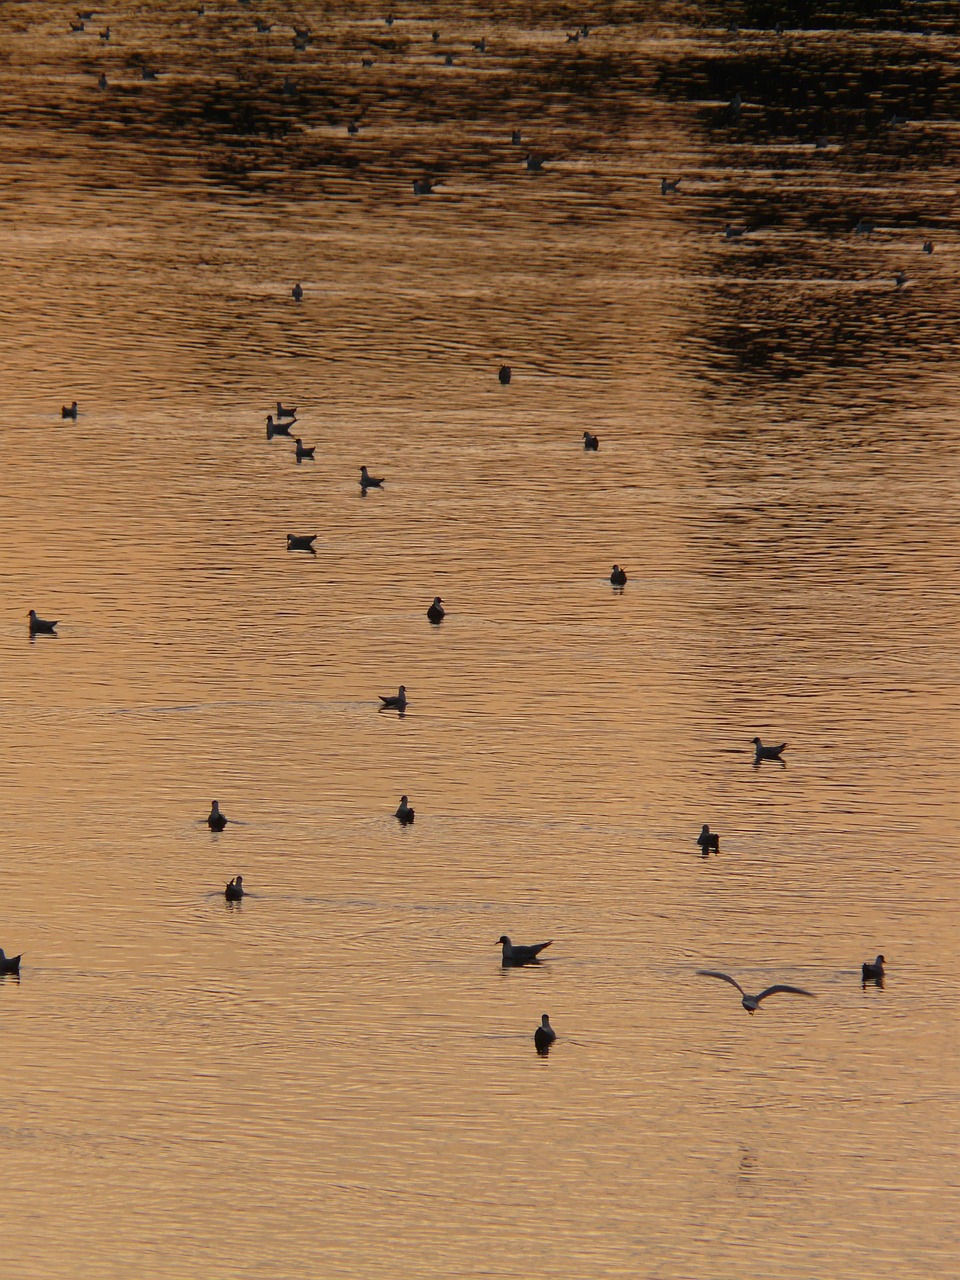 ducks river abendstimmung free photo